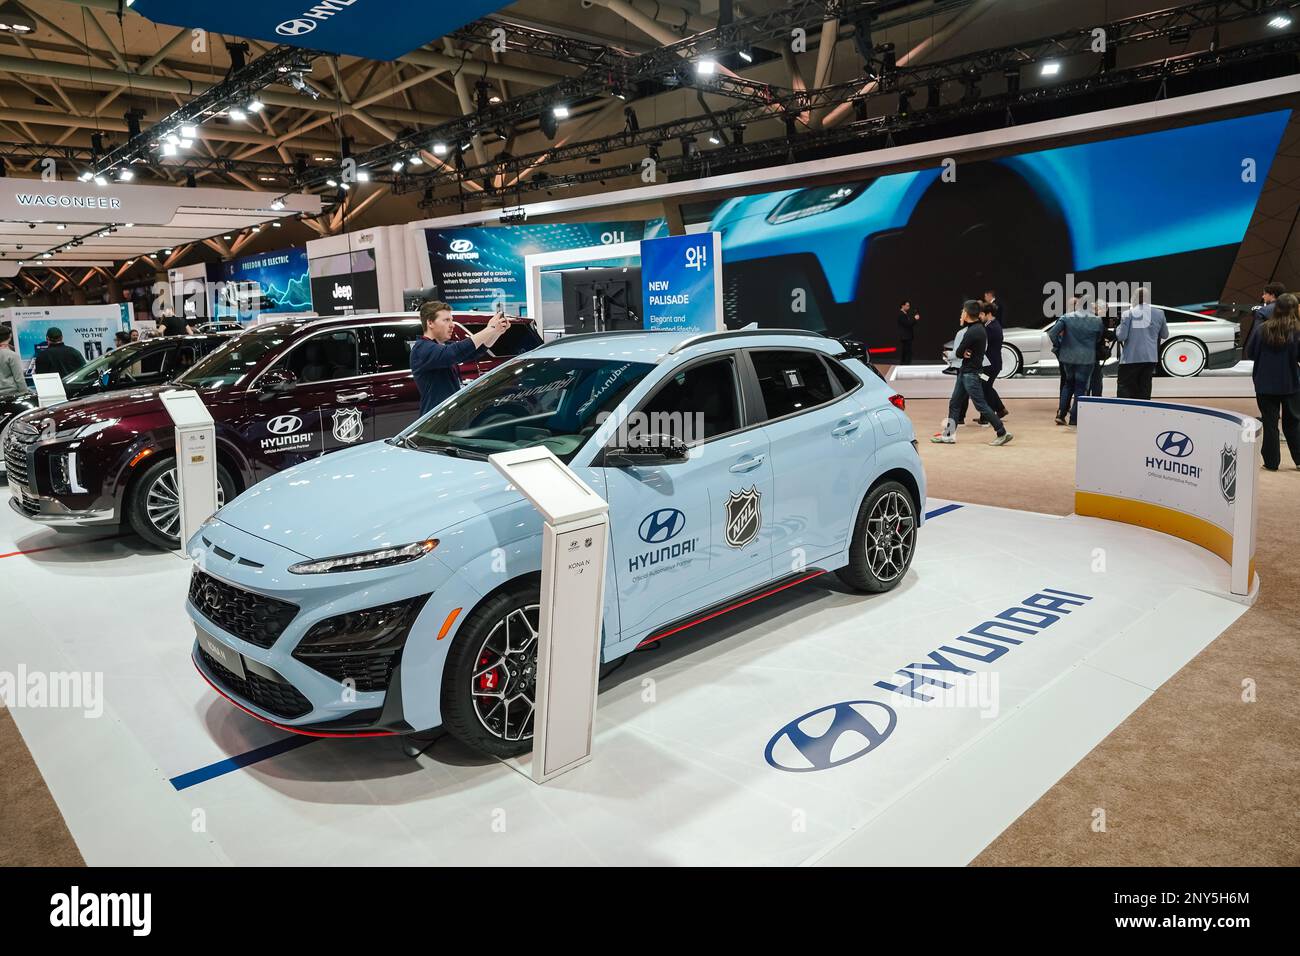 Hyundai-Auto-Ausstellung auf dem Boden bei der Autoshow Stockfoto